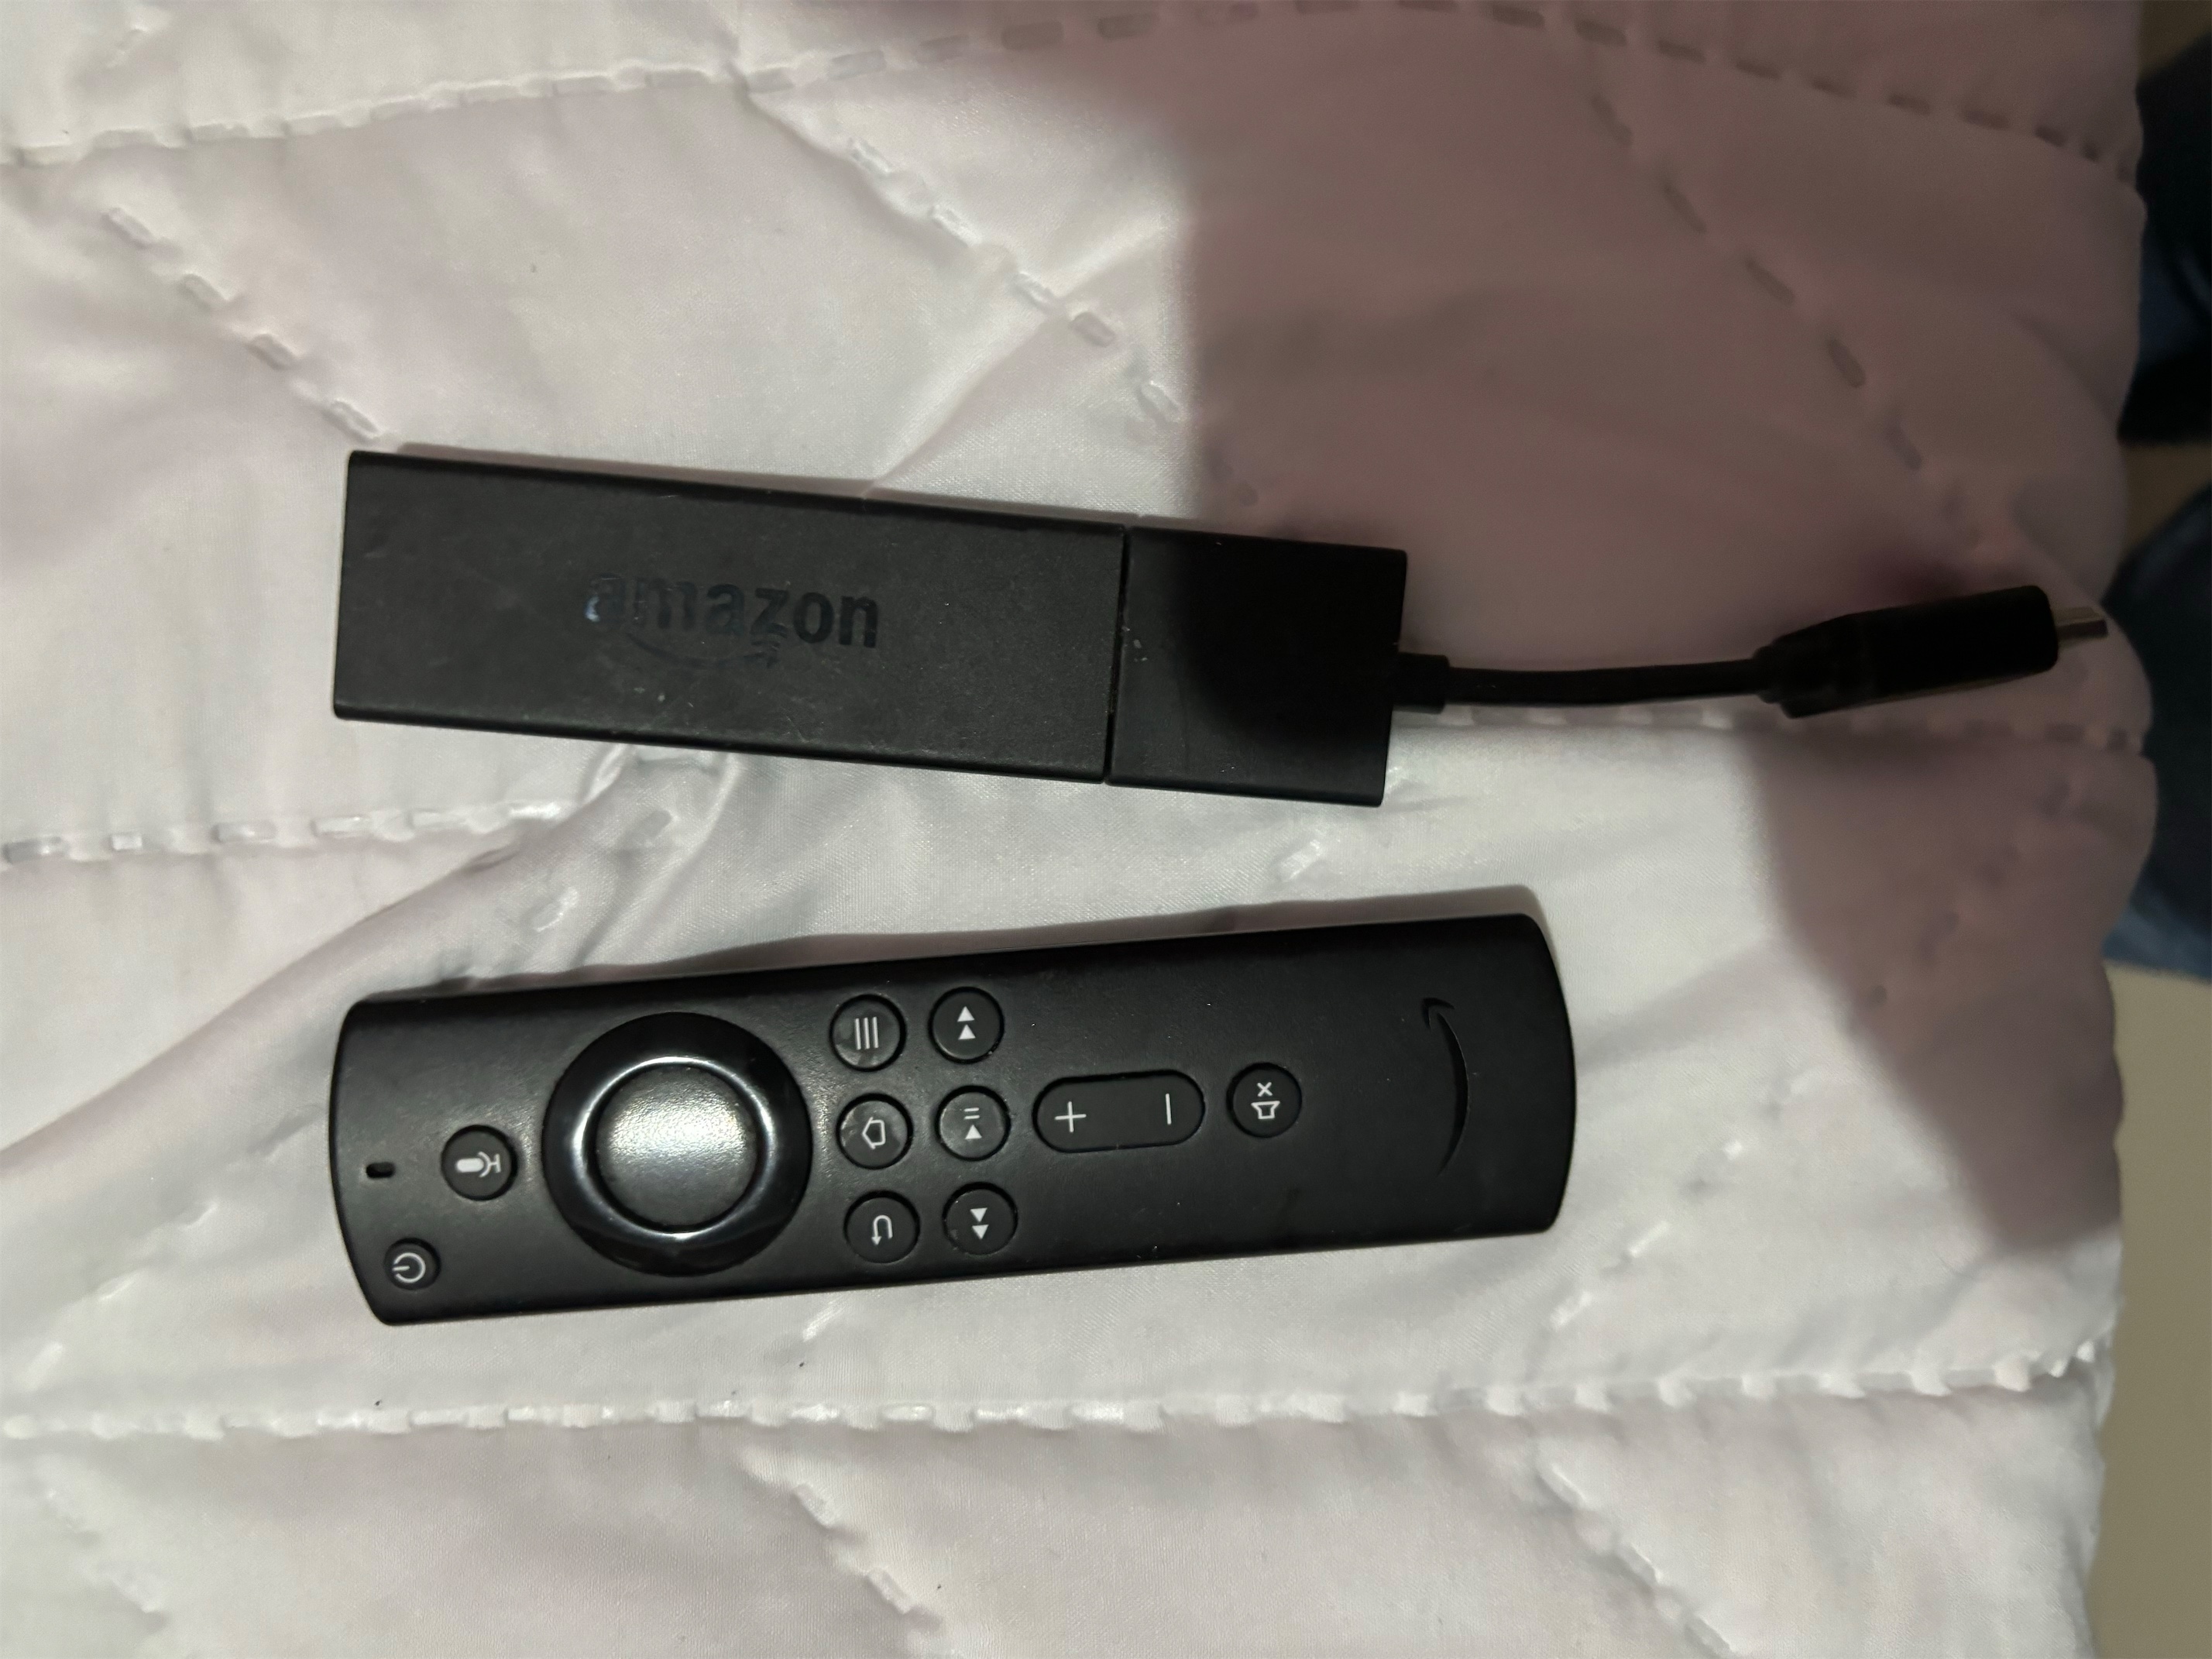 accesorios para electronica - FireTv stick Amazon 2